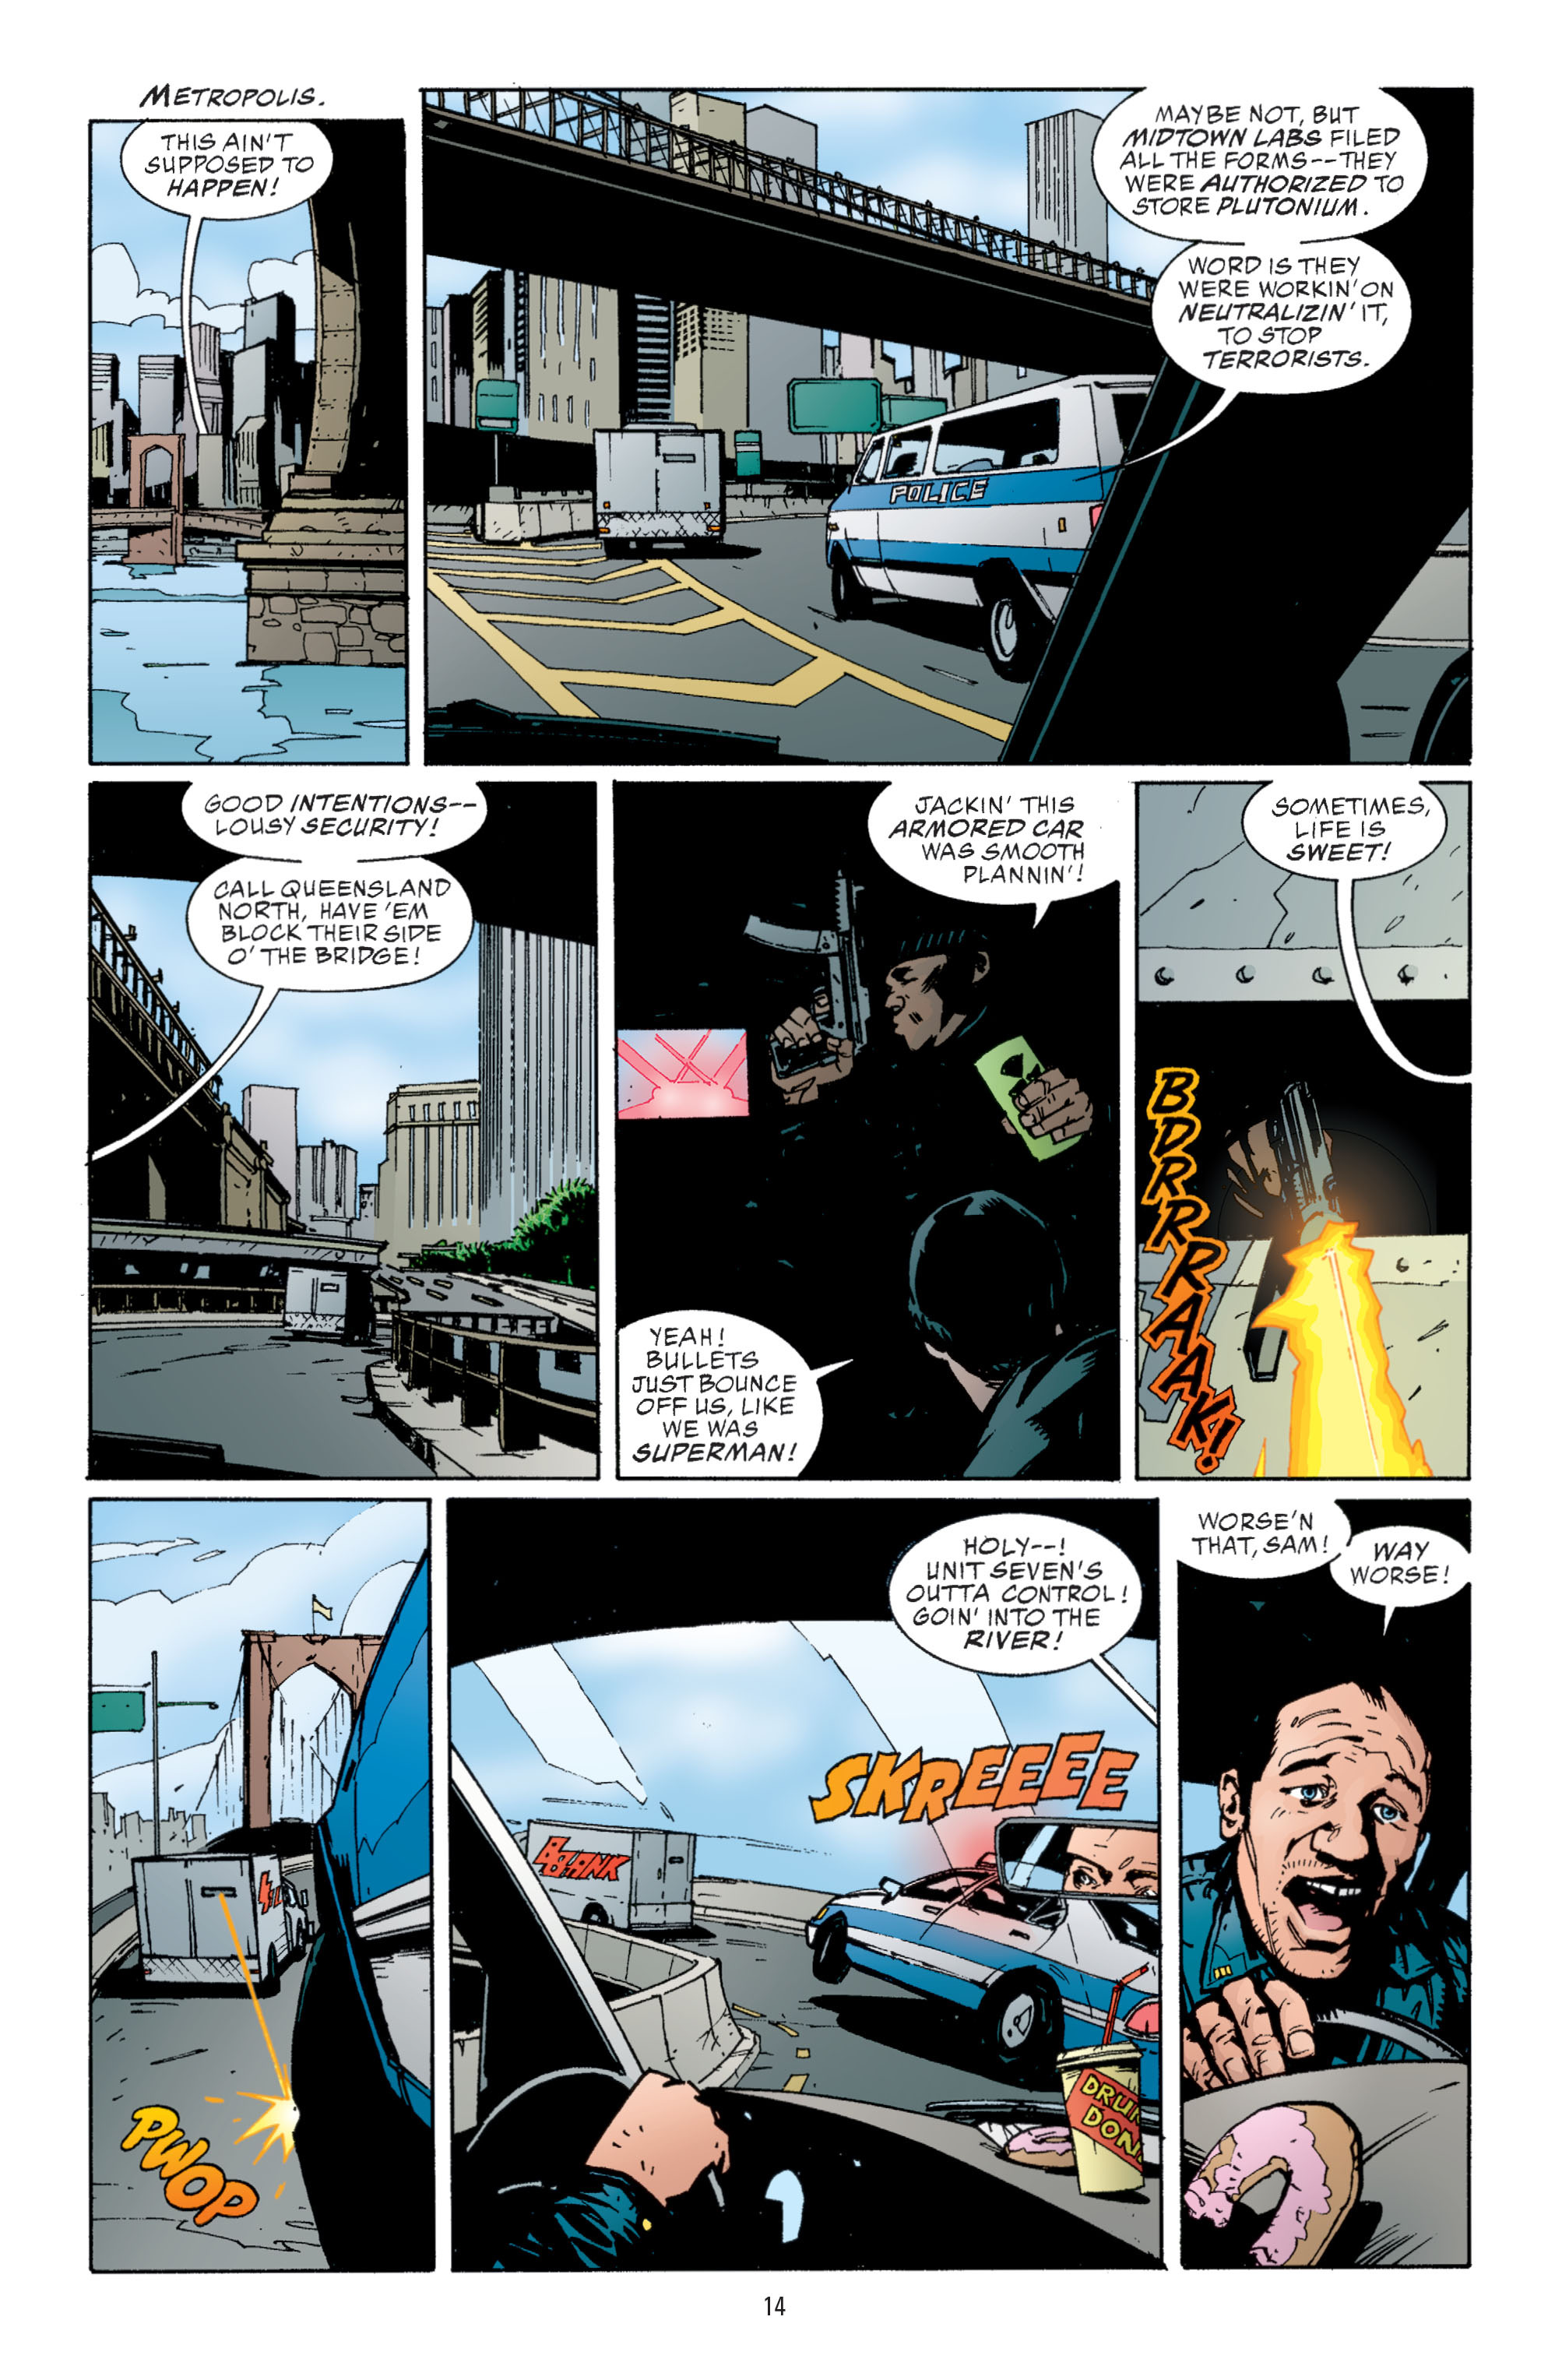 DC Comics/Dark Horse Comics: Justice League Full #1 - English 12